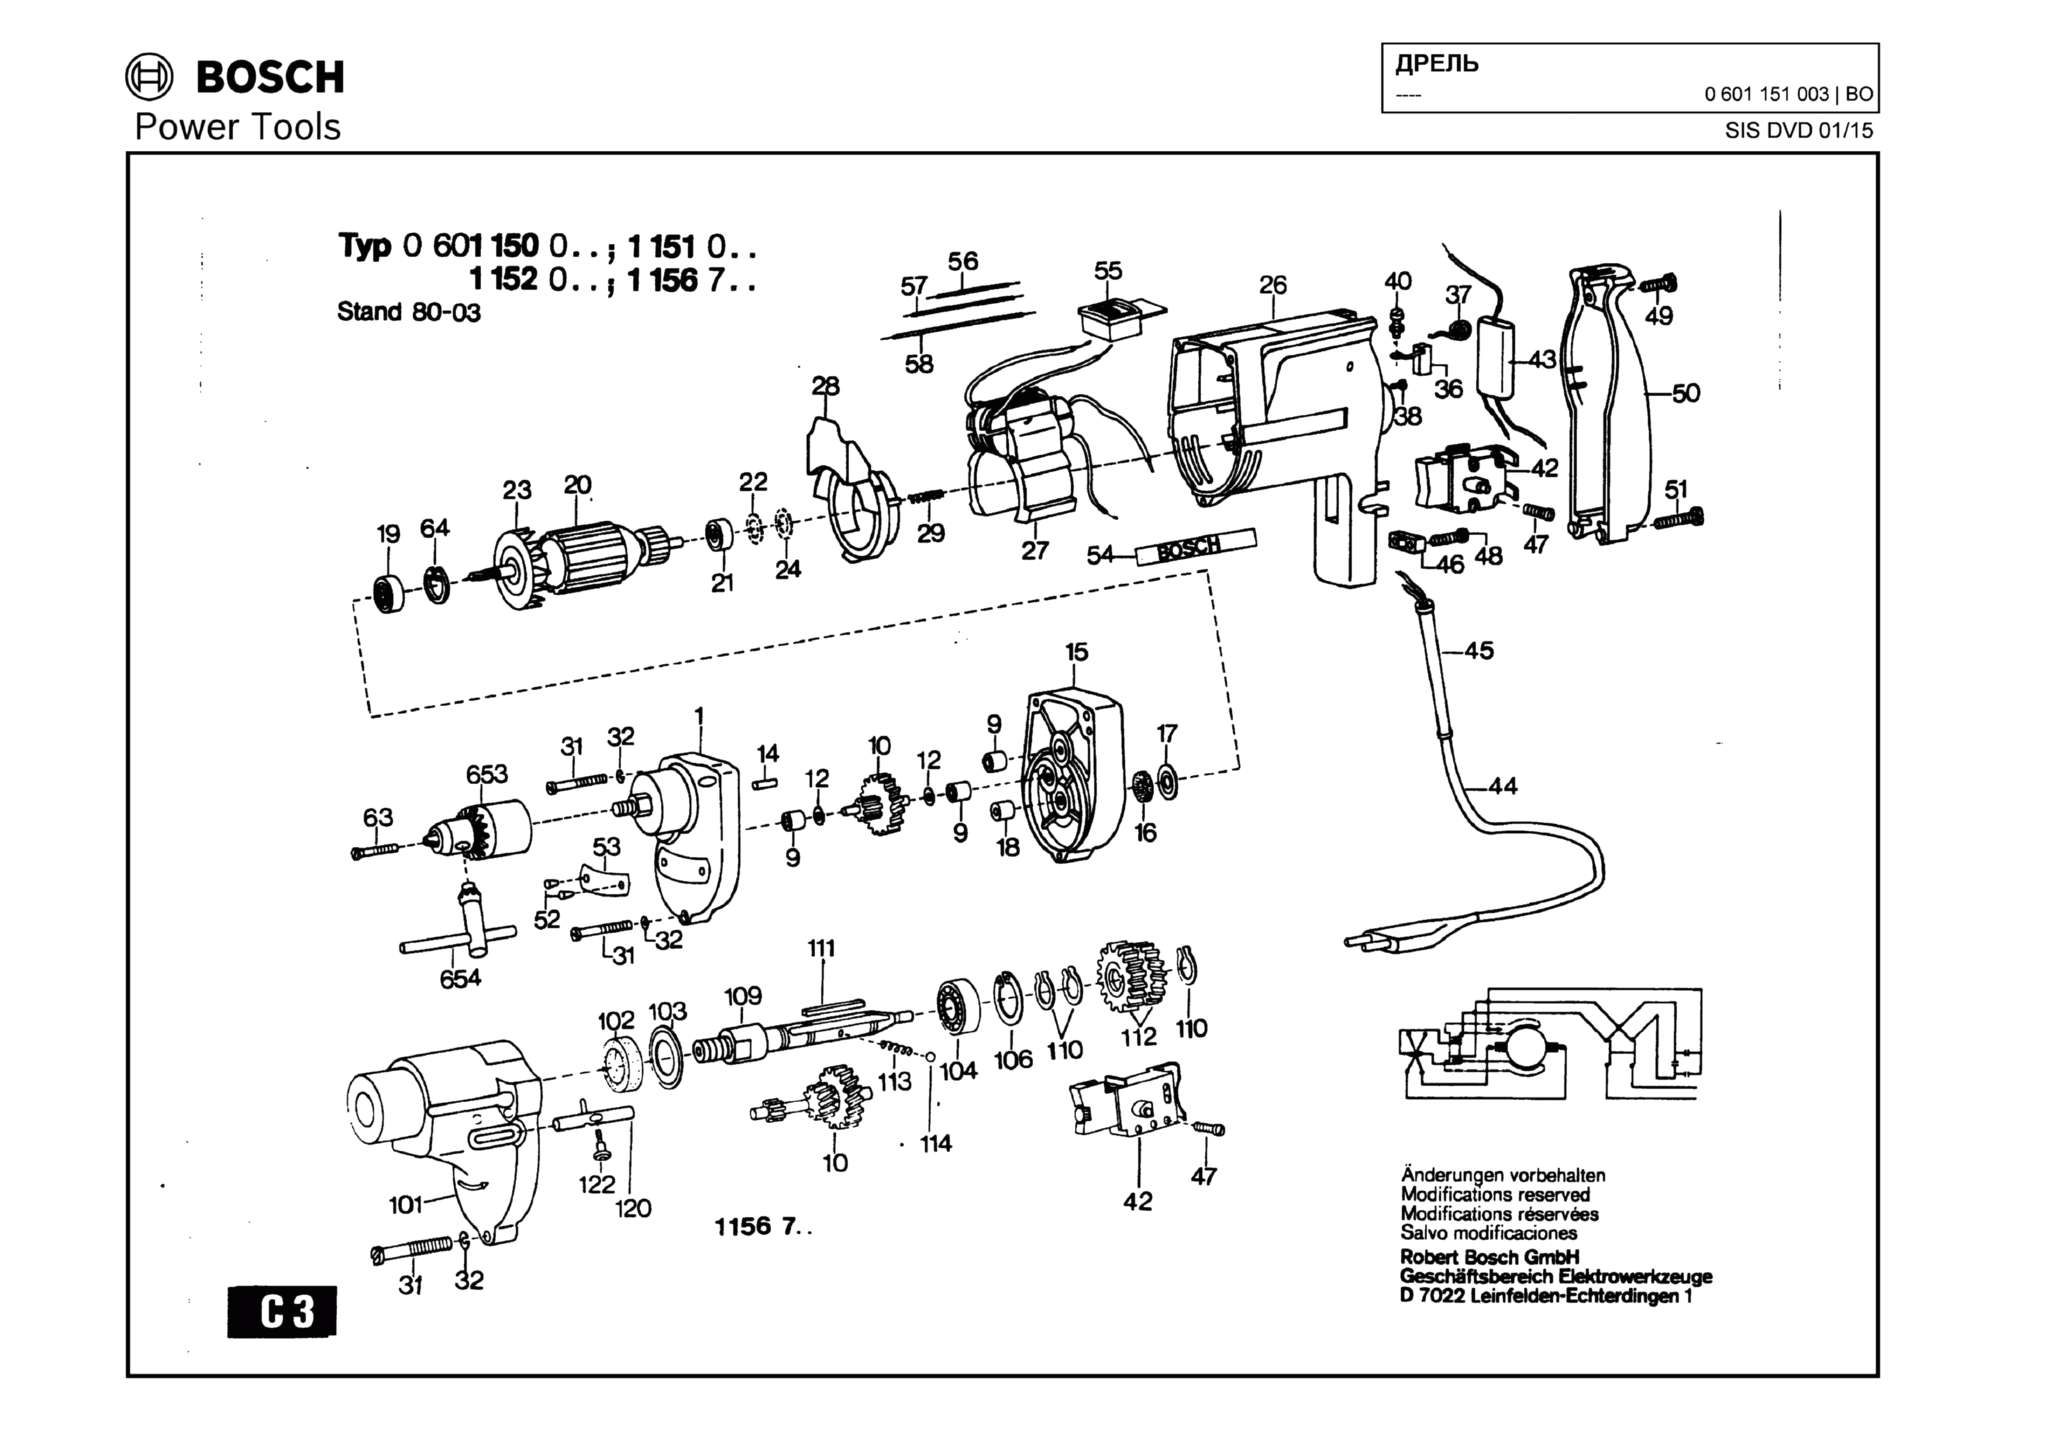 Запчасти, схема и деталировка Bosch (ТИП 0601151003)